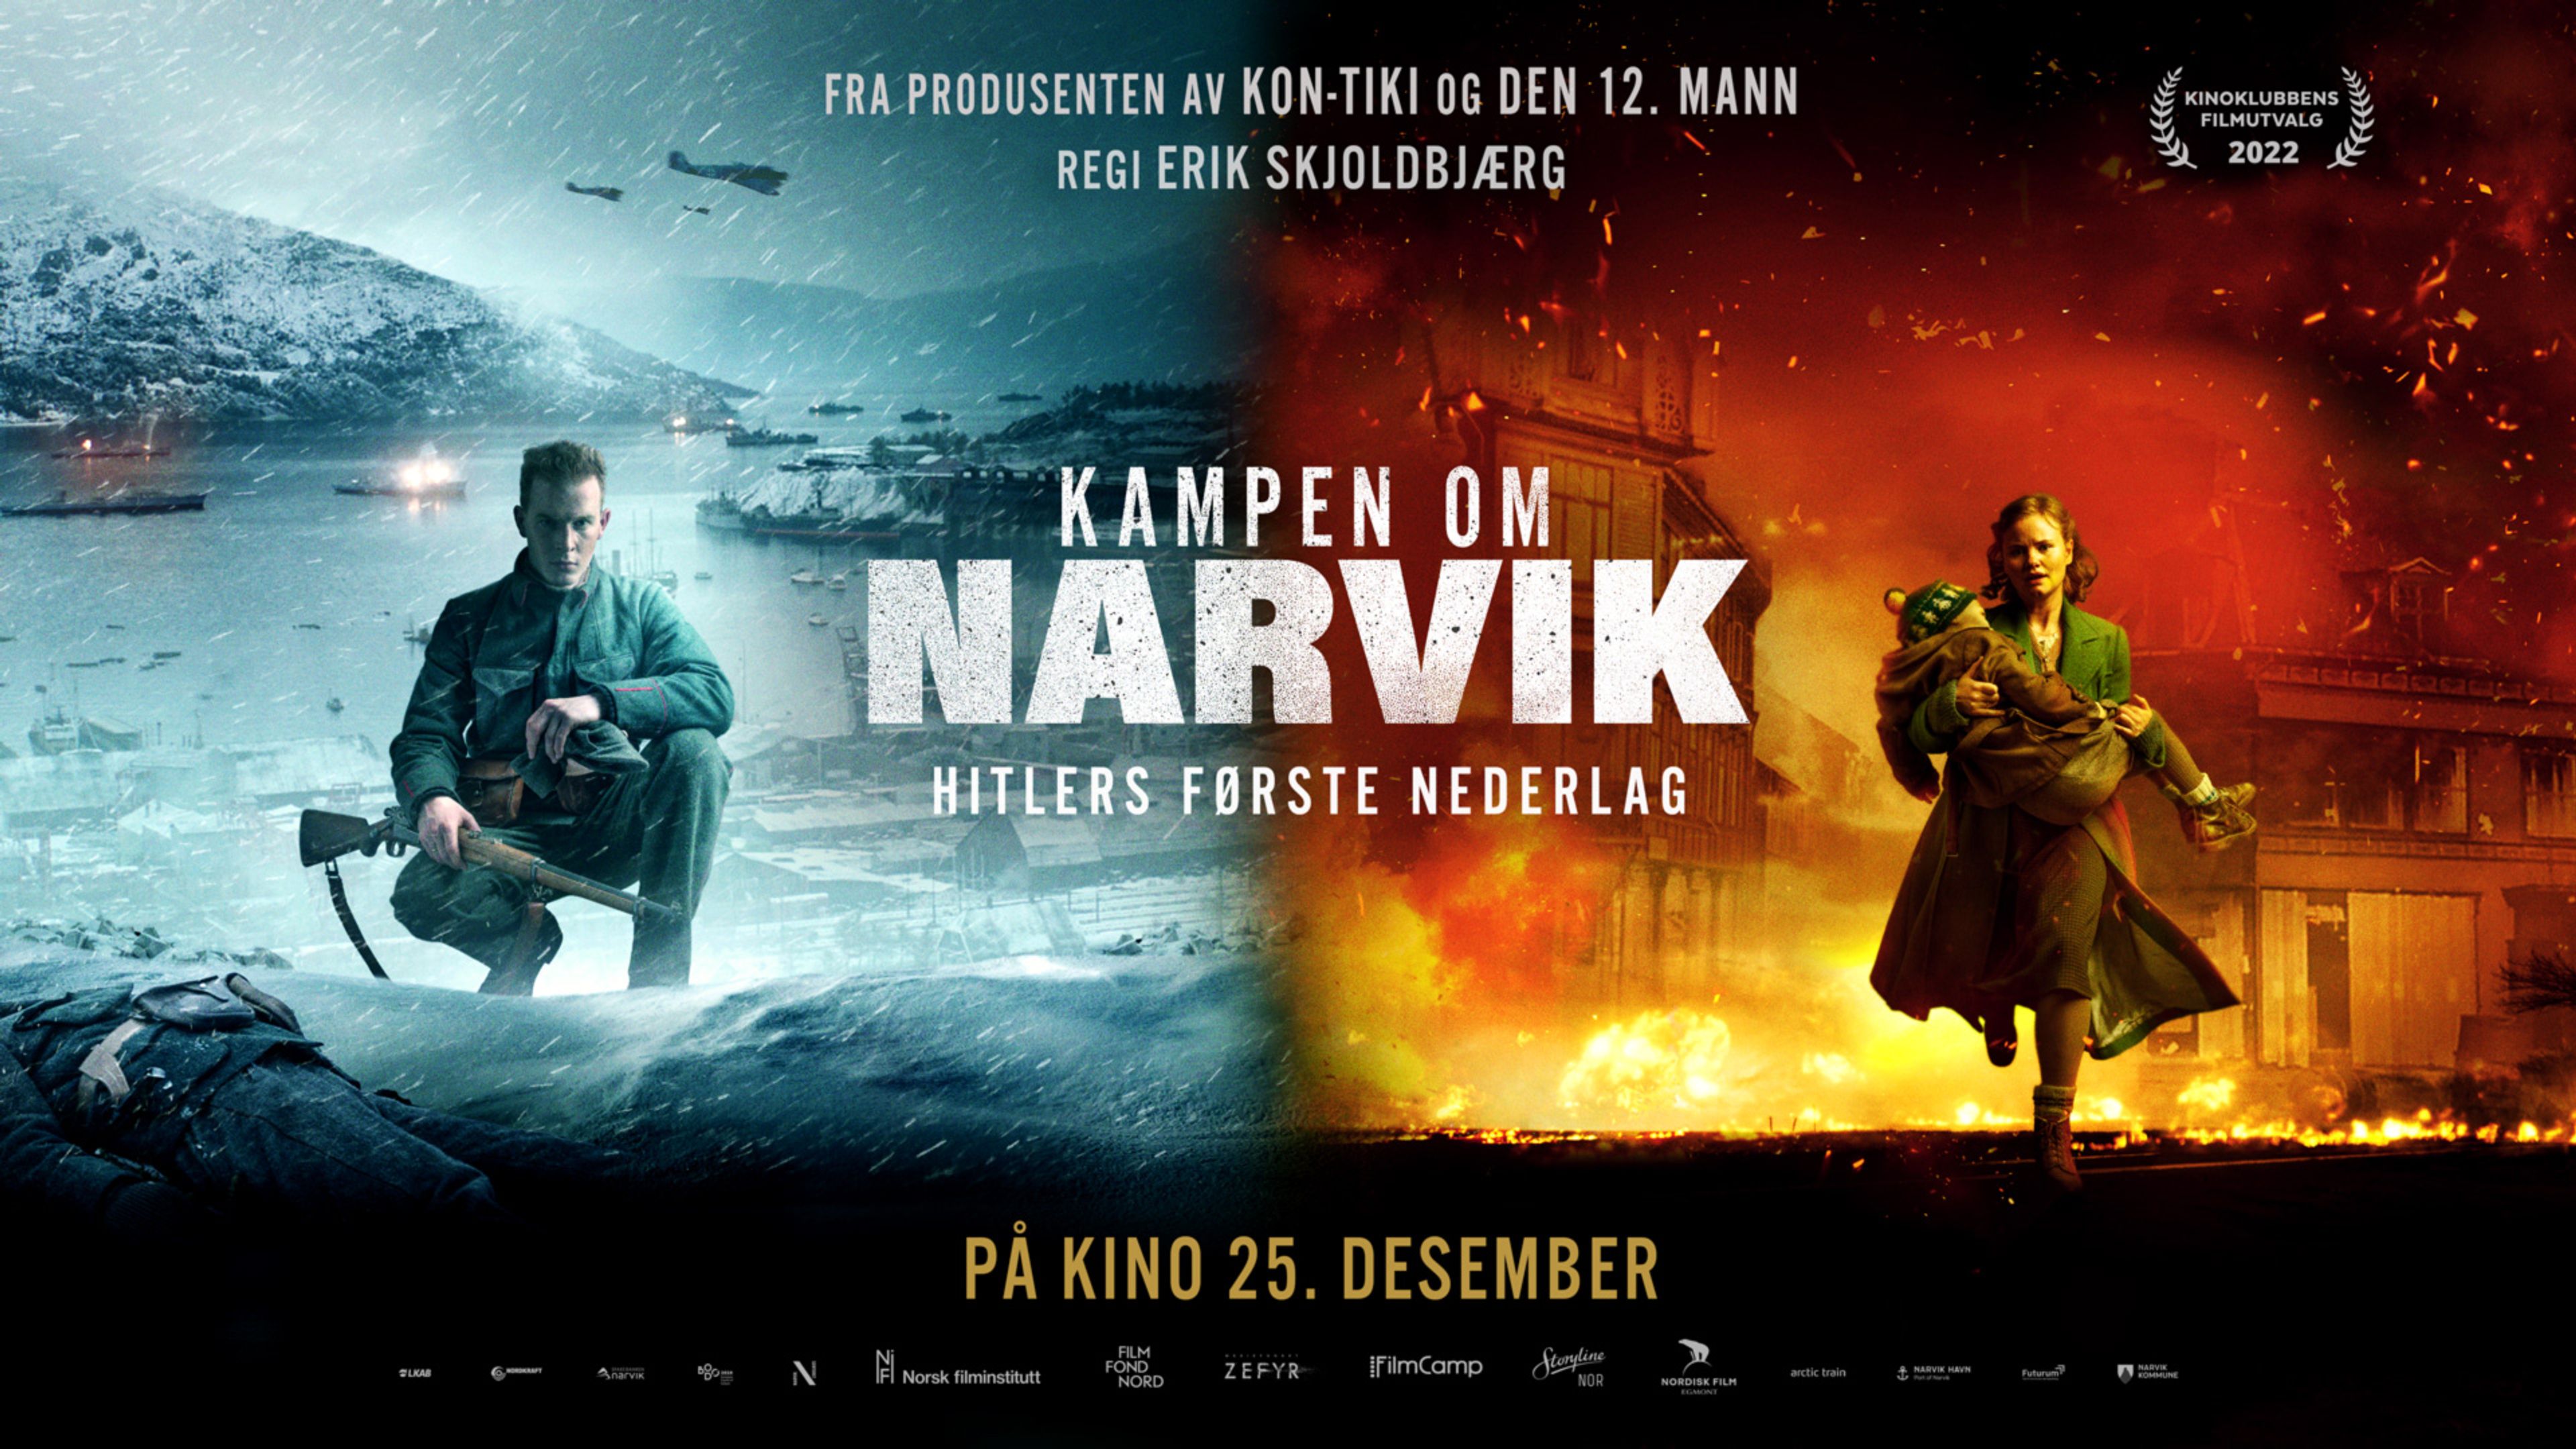 Kampen om Narvik